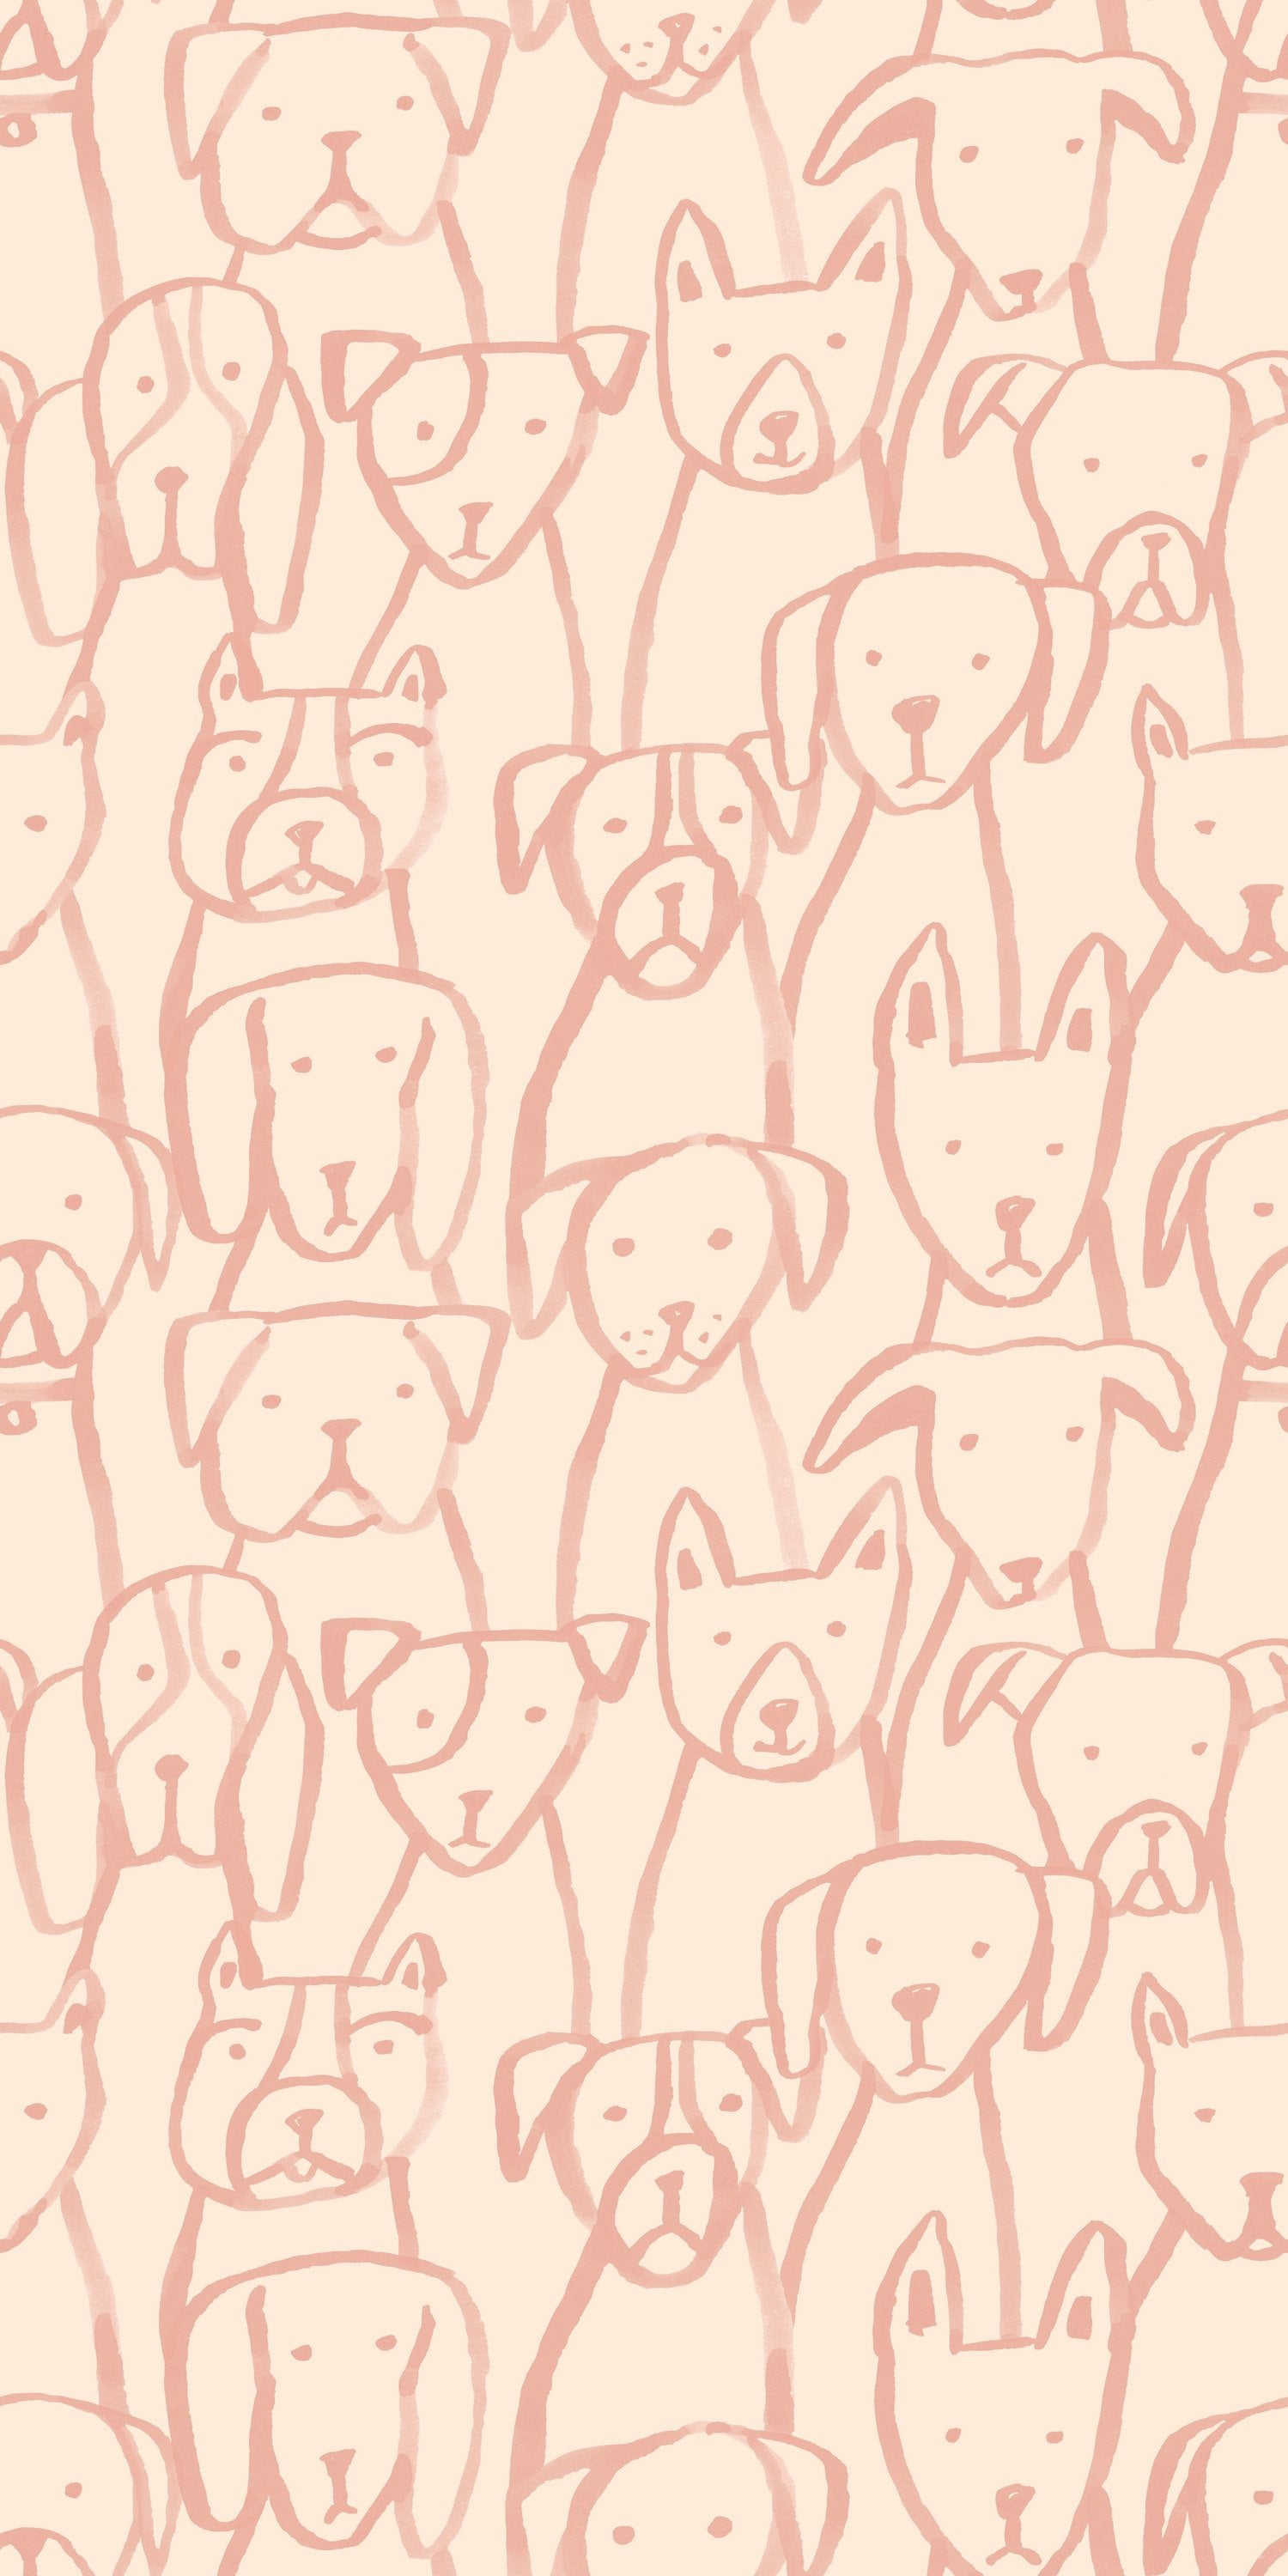 tumblr dog background